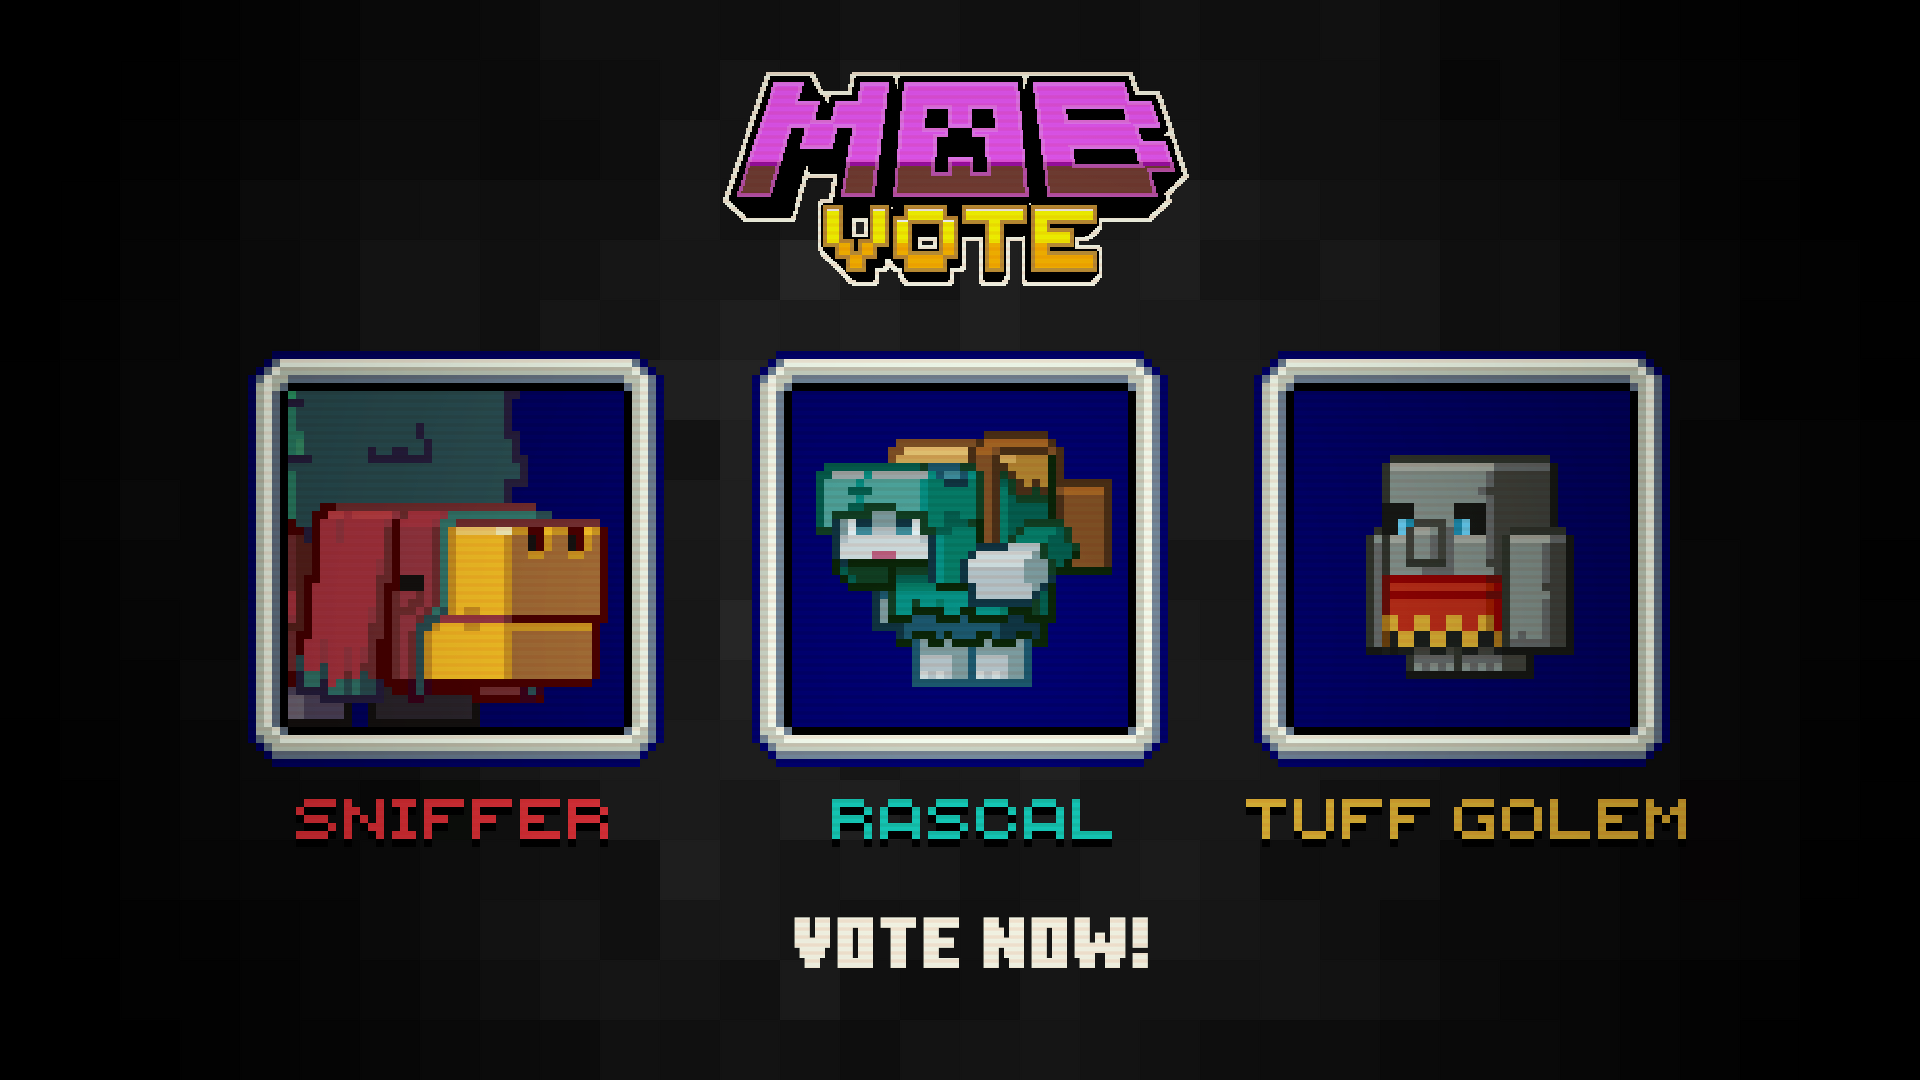 ⭐Mob Votação: Farejador🐢, Minecraft Live 2022